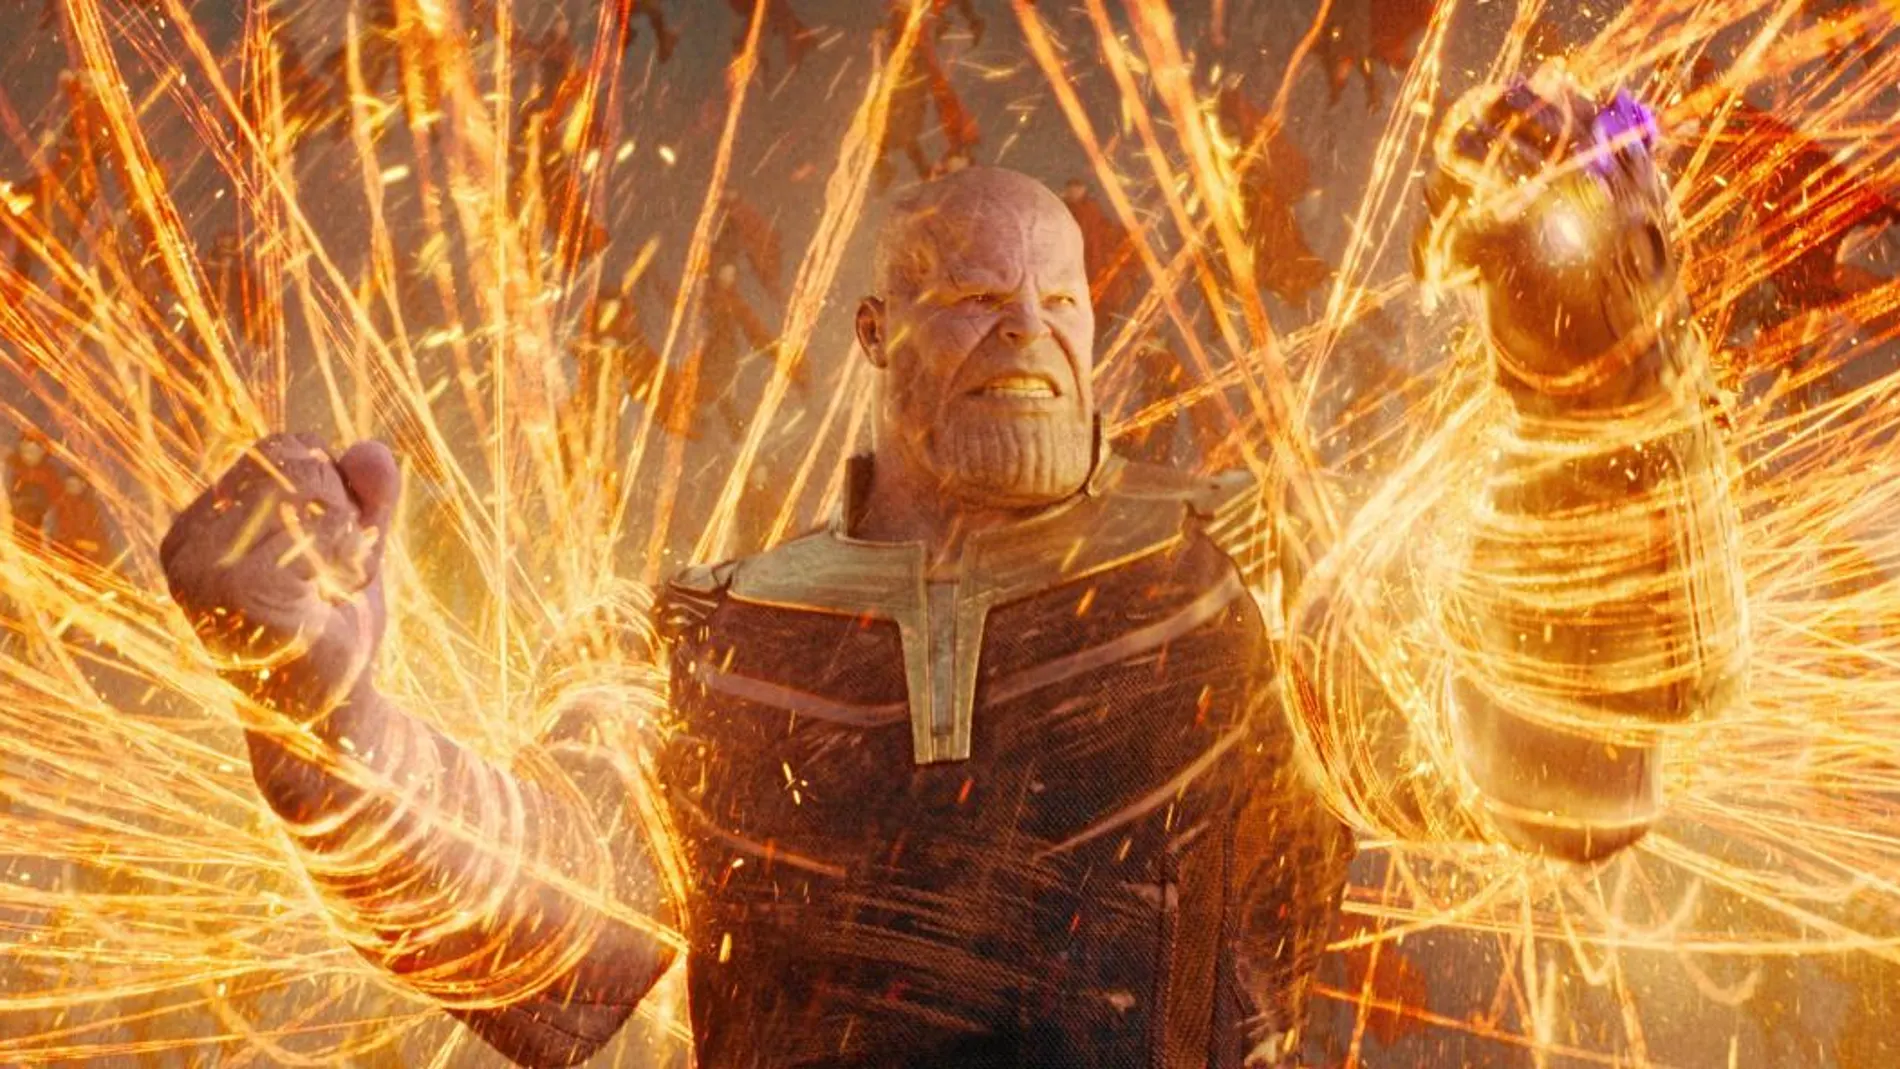 «Los Vengadores: infinity war» ya se ha calificado como la «mayor película de superhéroes» y la segunda parte llega en 2019